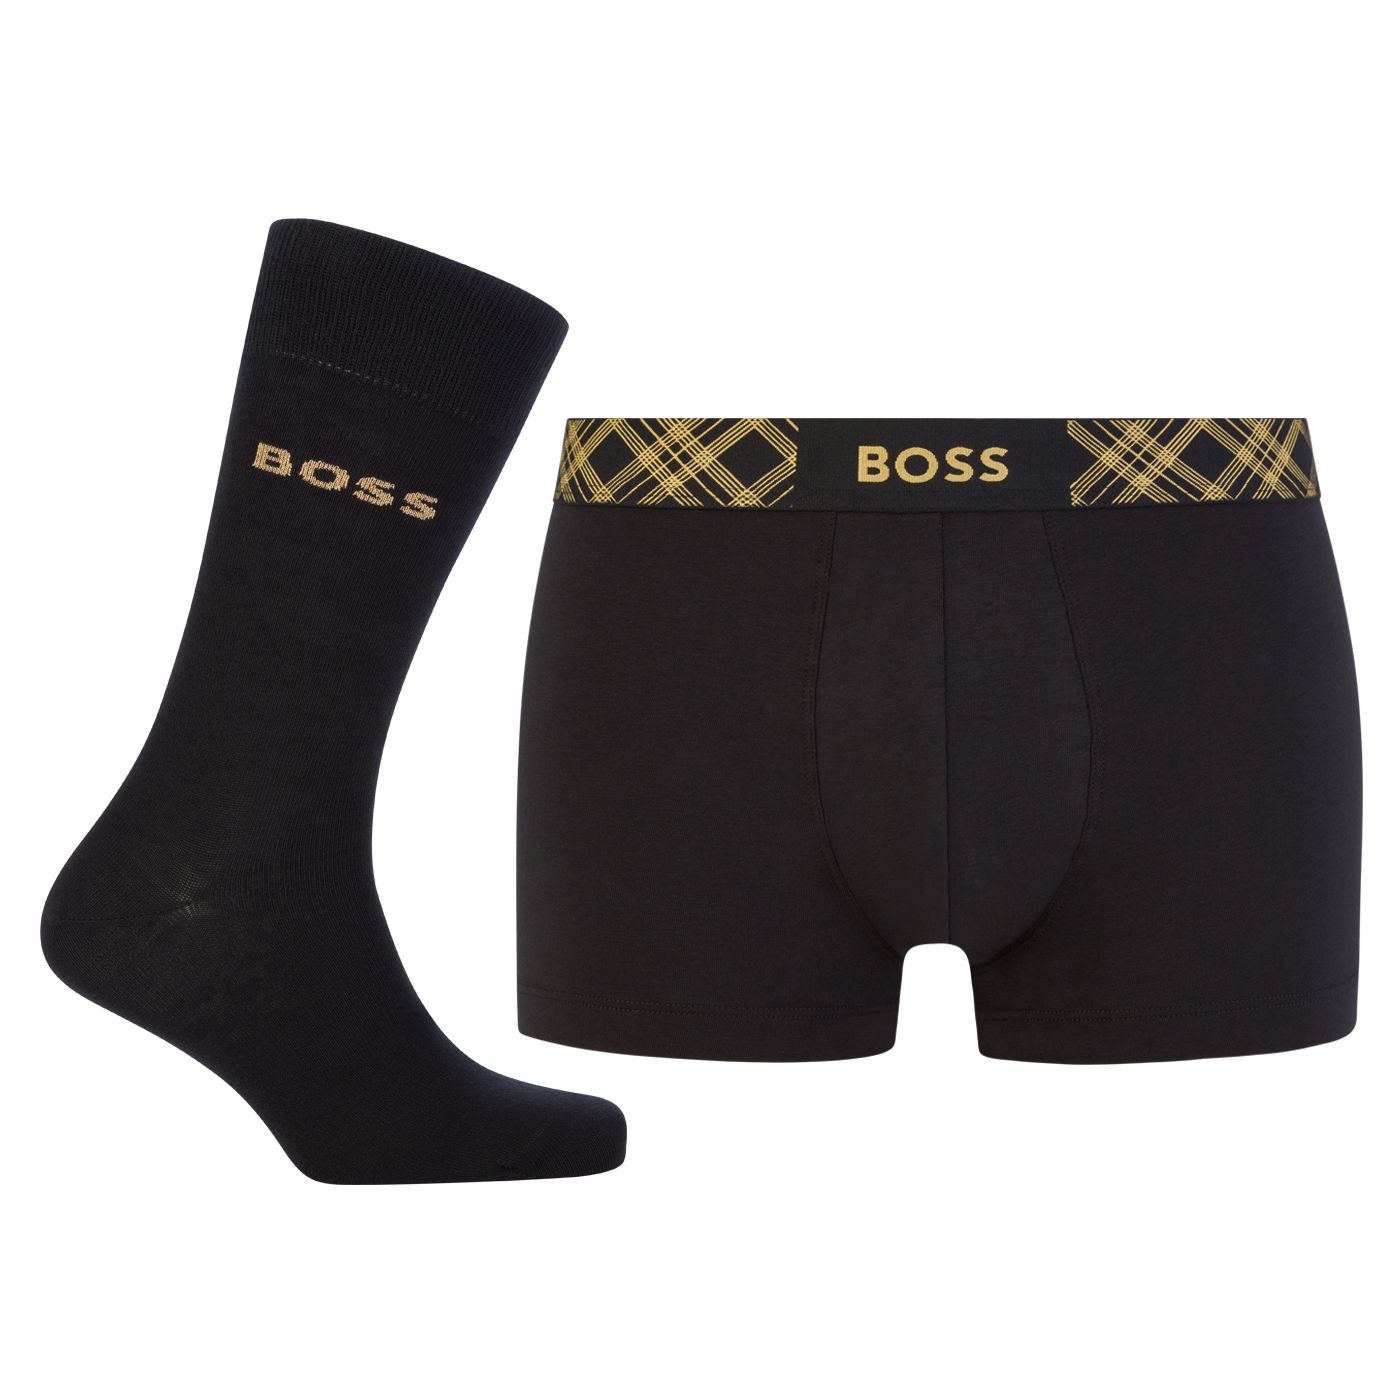 Hugo Boss Pánska sada - boxerky a ponožky BOSS 50500374-001 M